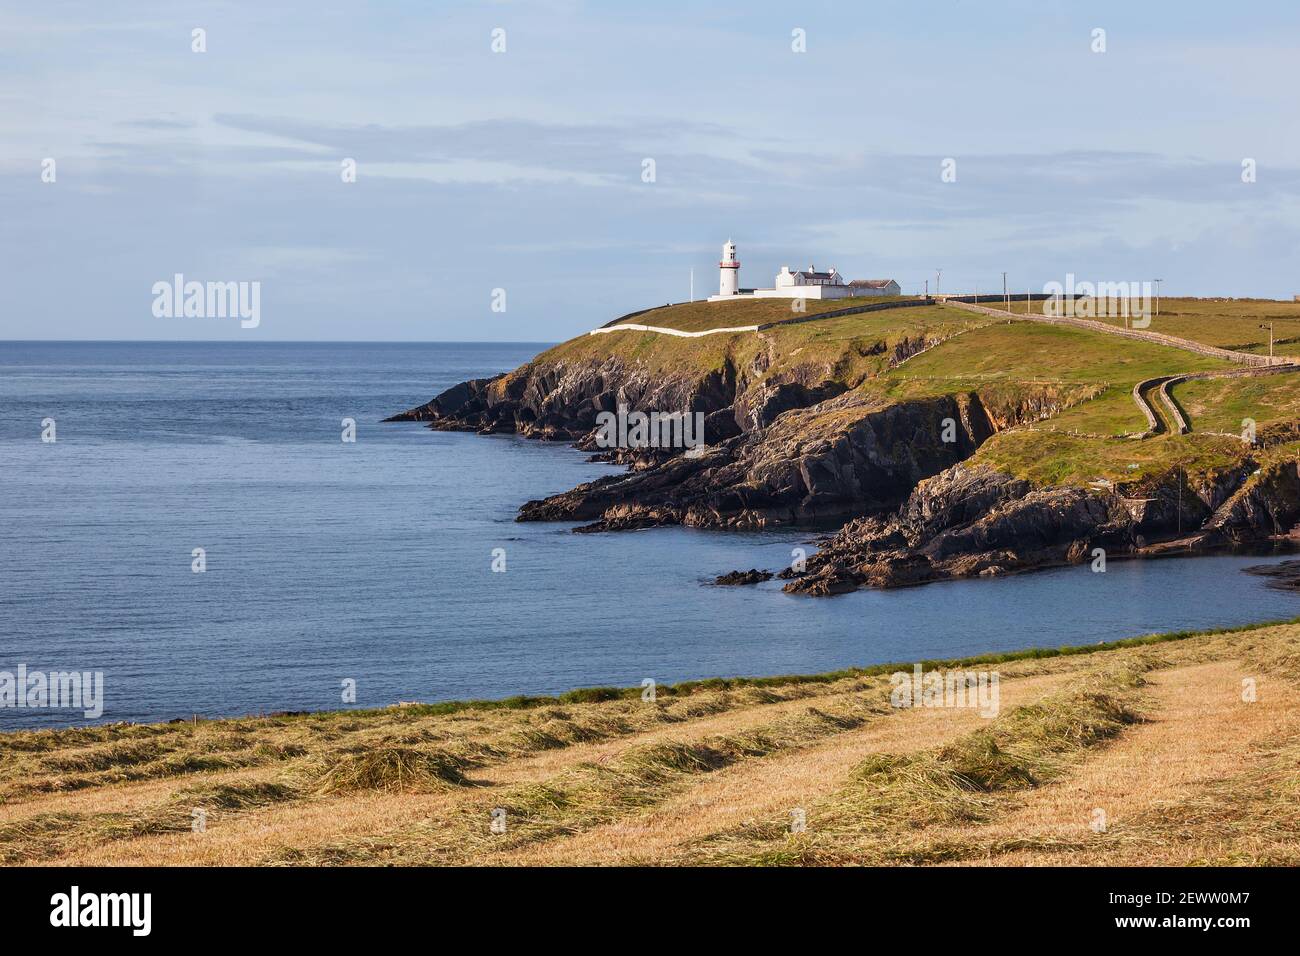 Il faro di Galley Head a West Cork, Irlanda. Il faro è uno dei più famosi punti di riferimento della zona e si trova sulla Wild Atlantic Way. Foto Stock